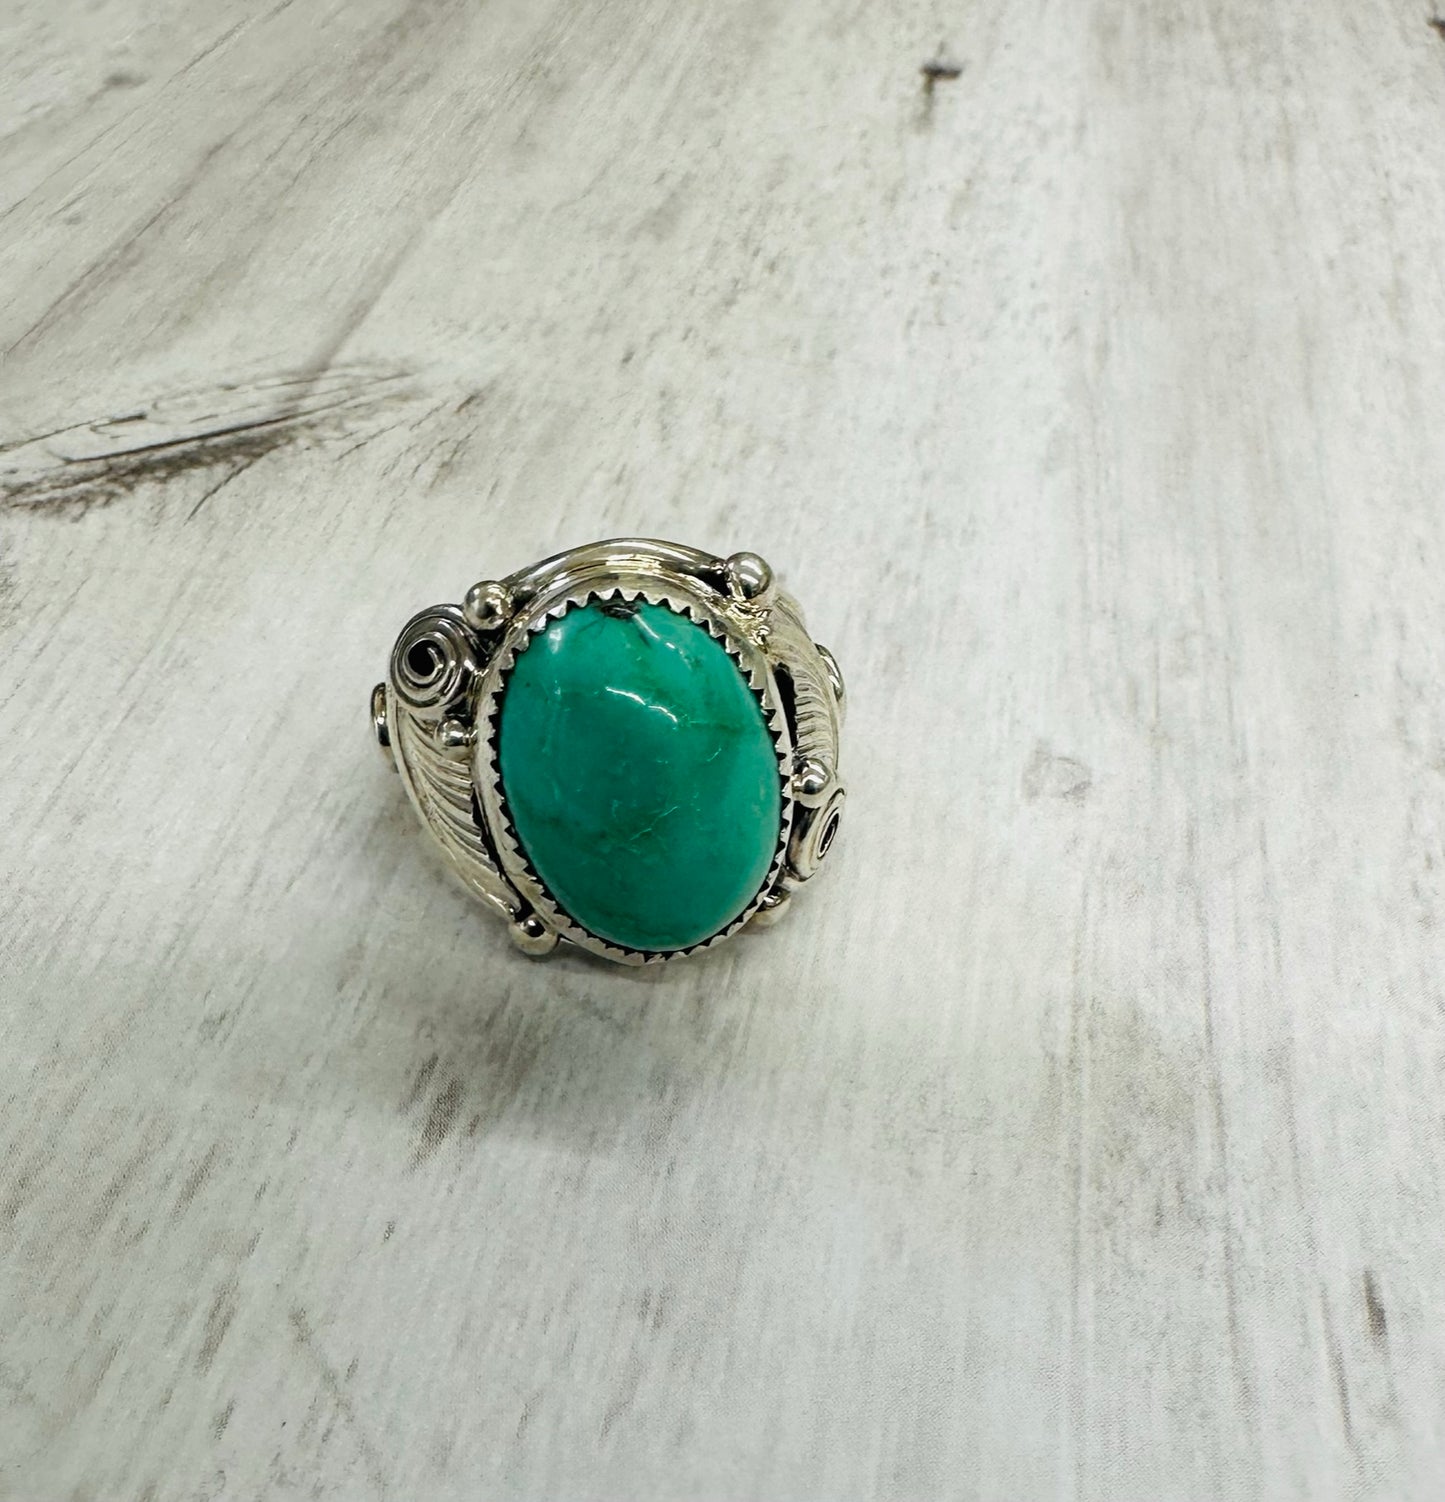 Turquoise Men's Ring